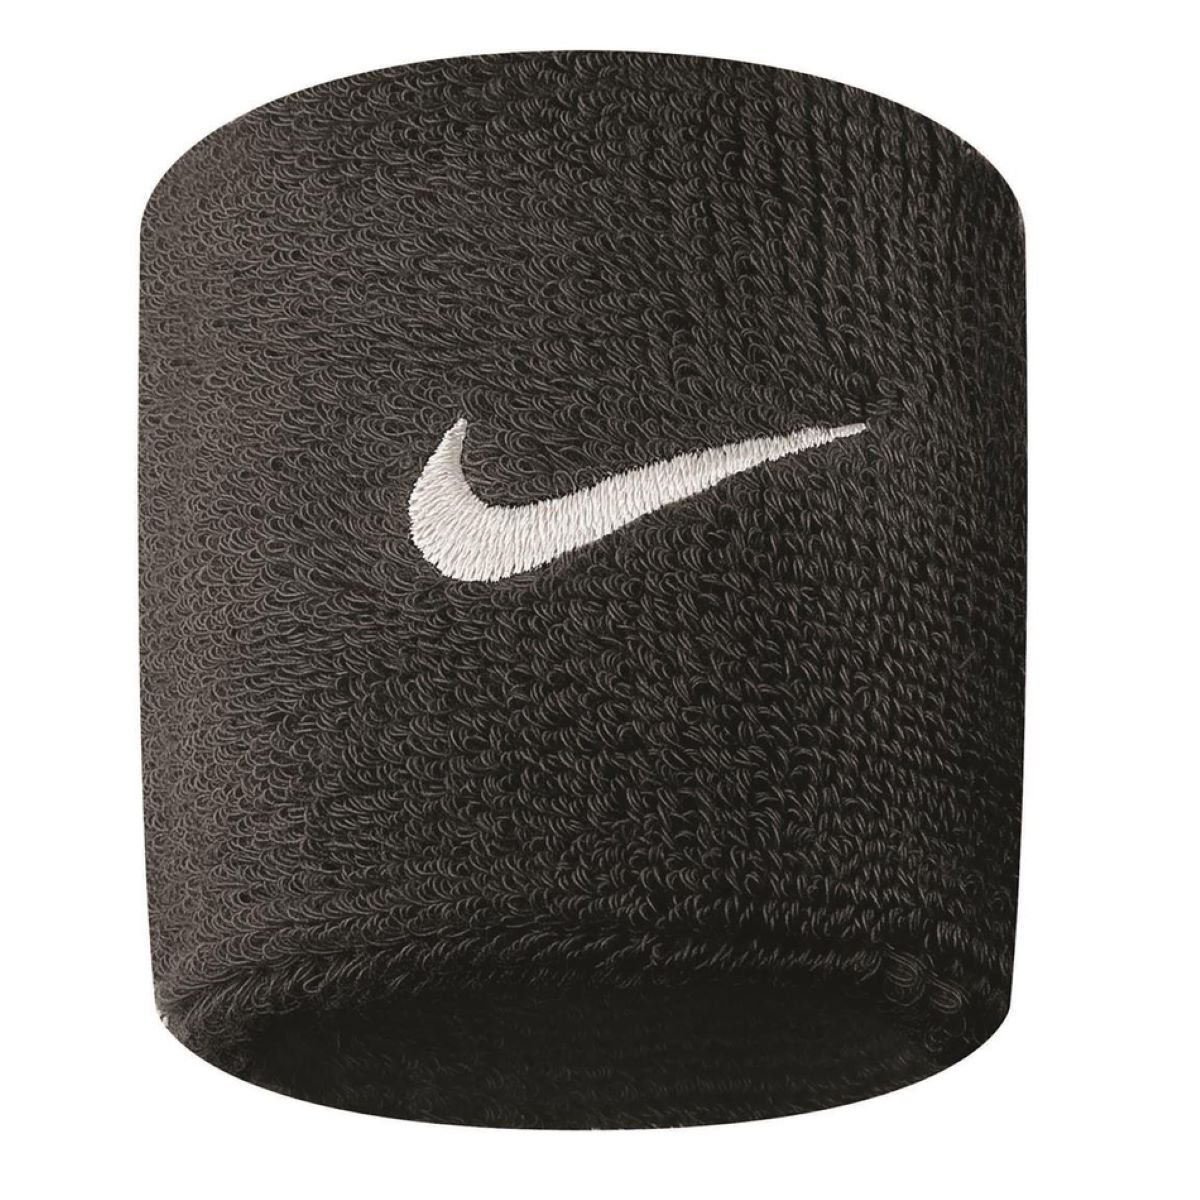 Nike Swoosh Wristbands Uni Veľkosť: Univerzálna veľkosť